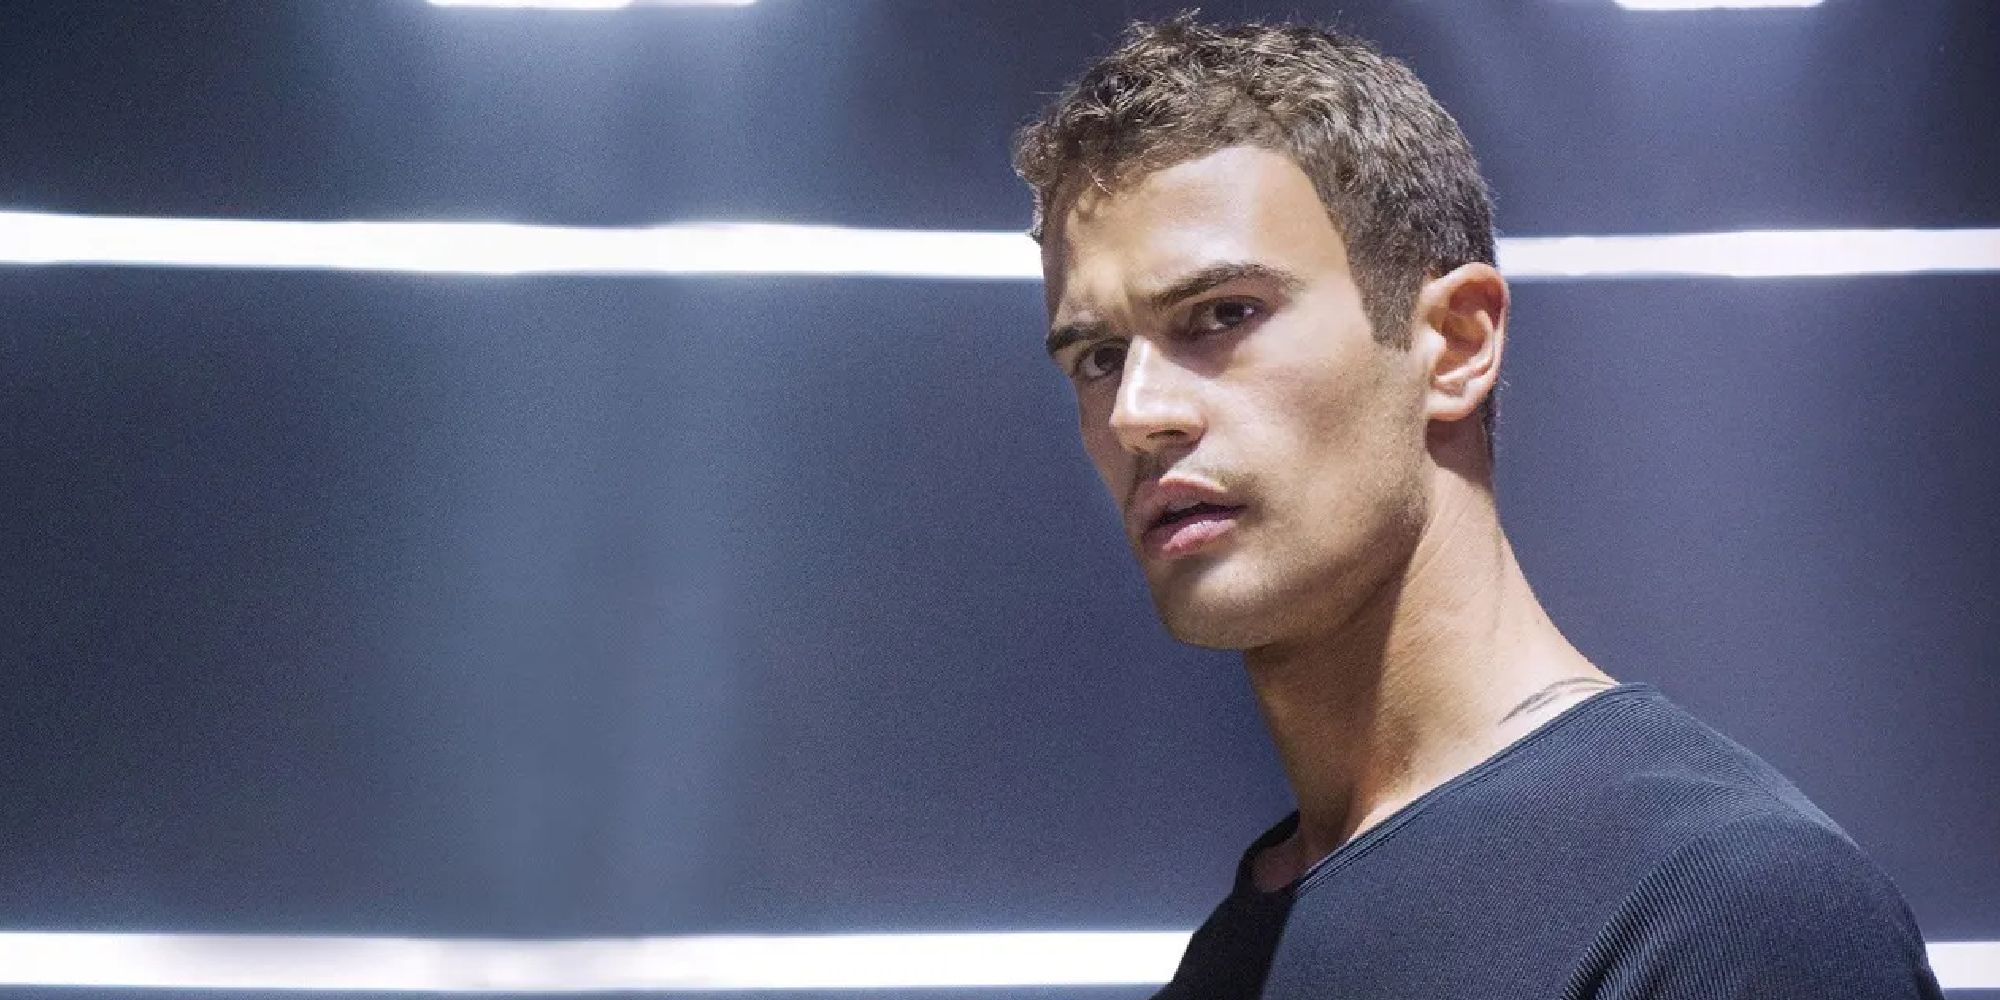 Theo James in Divergent